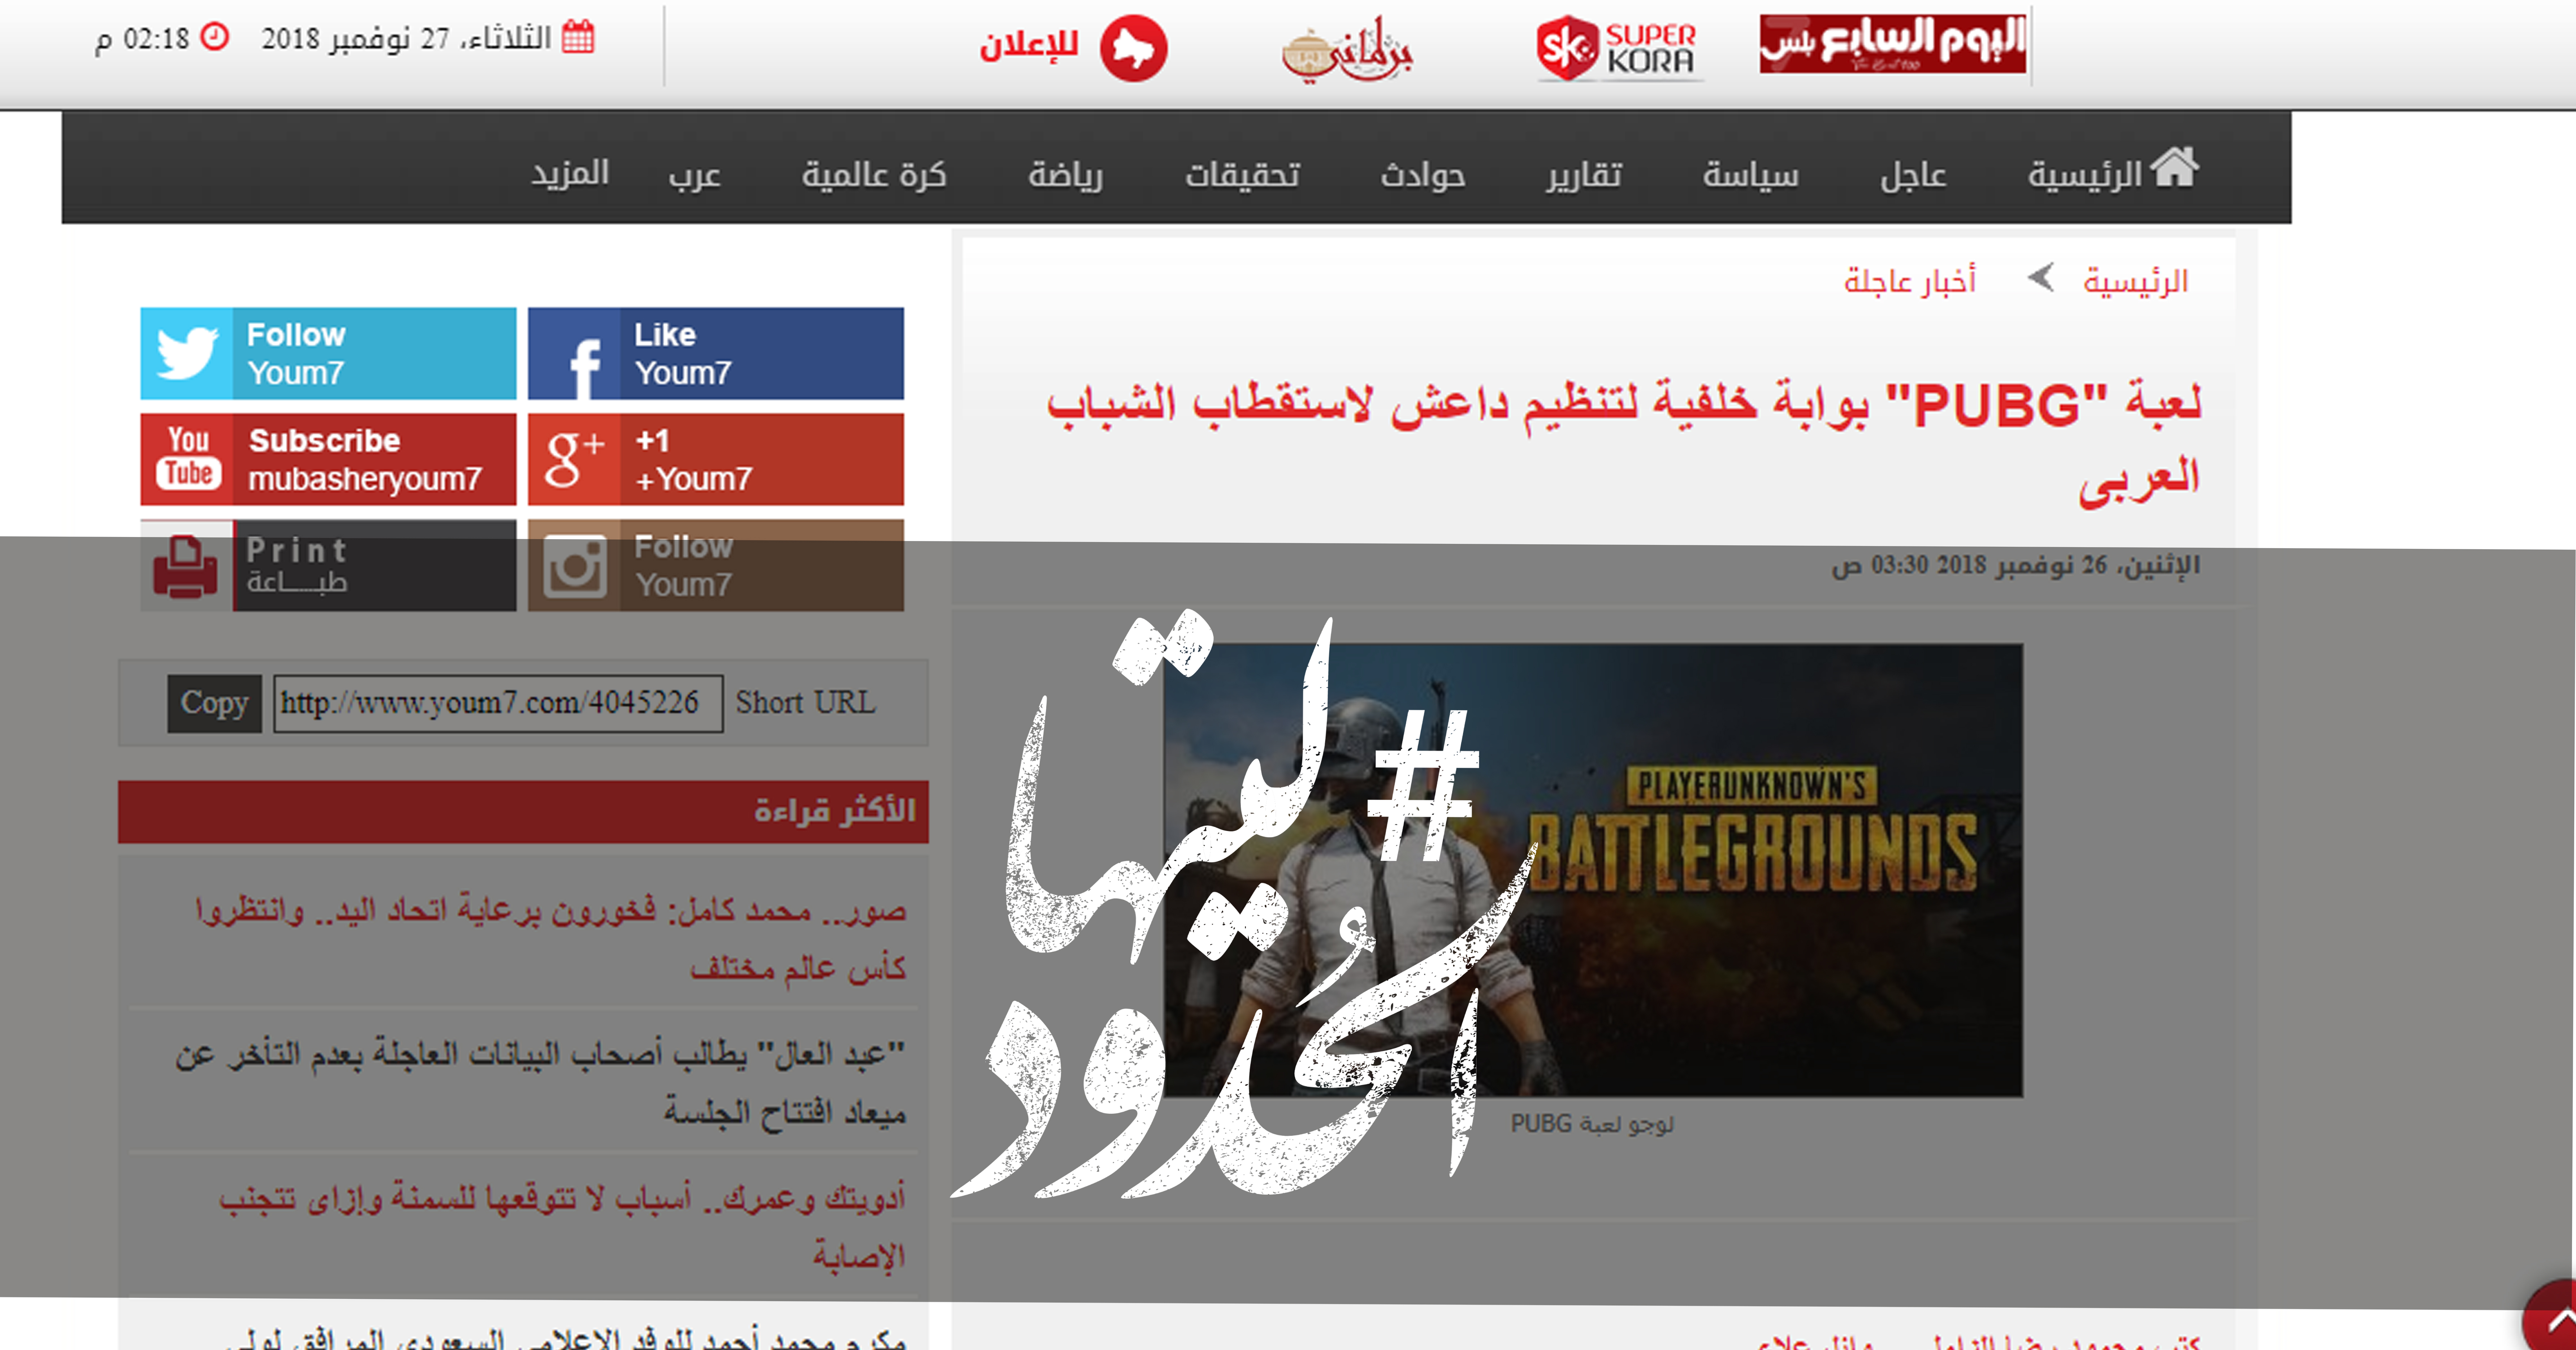 صورة لعبة “PUBG” بوابة خلفية لتنظيم داعش لاستقطاب الشباب العربى